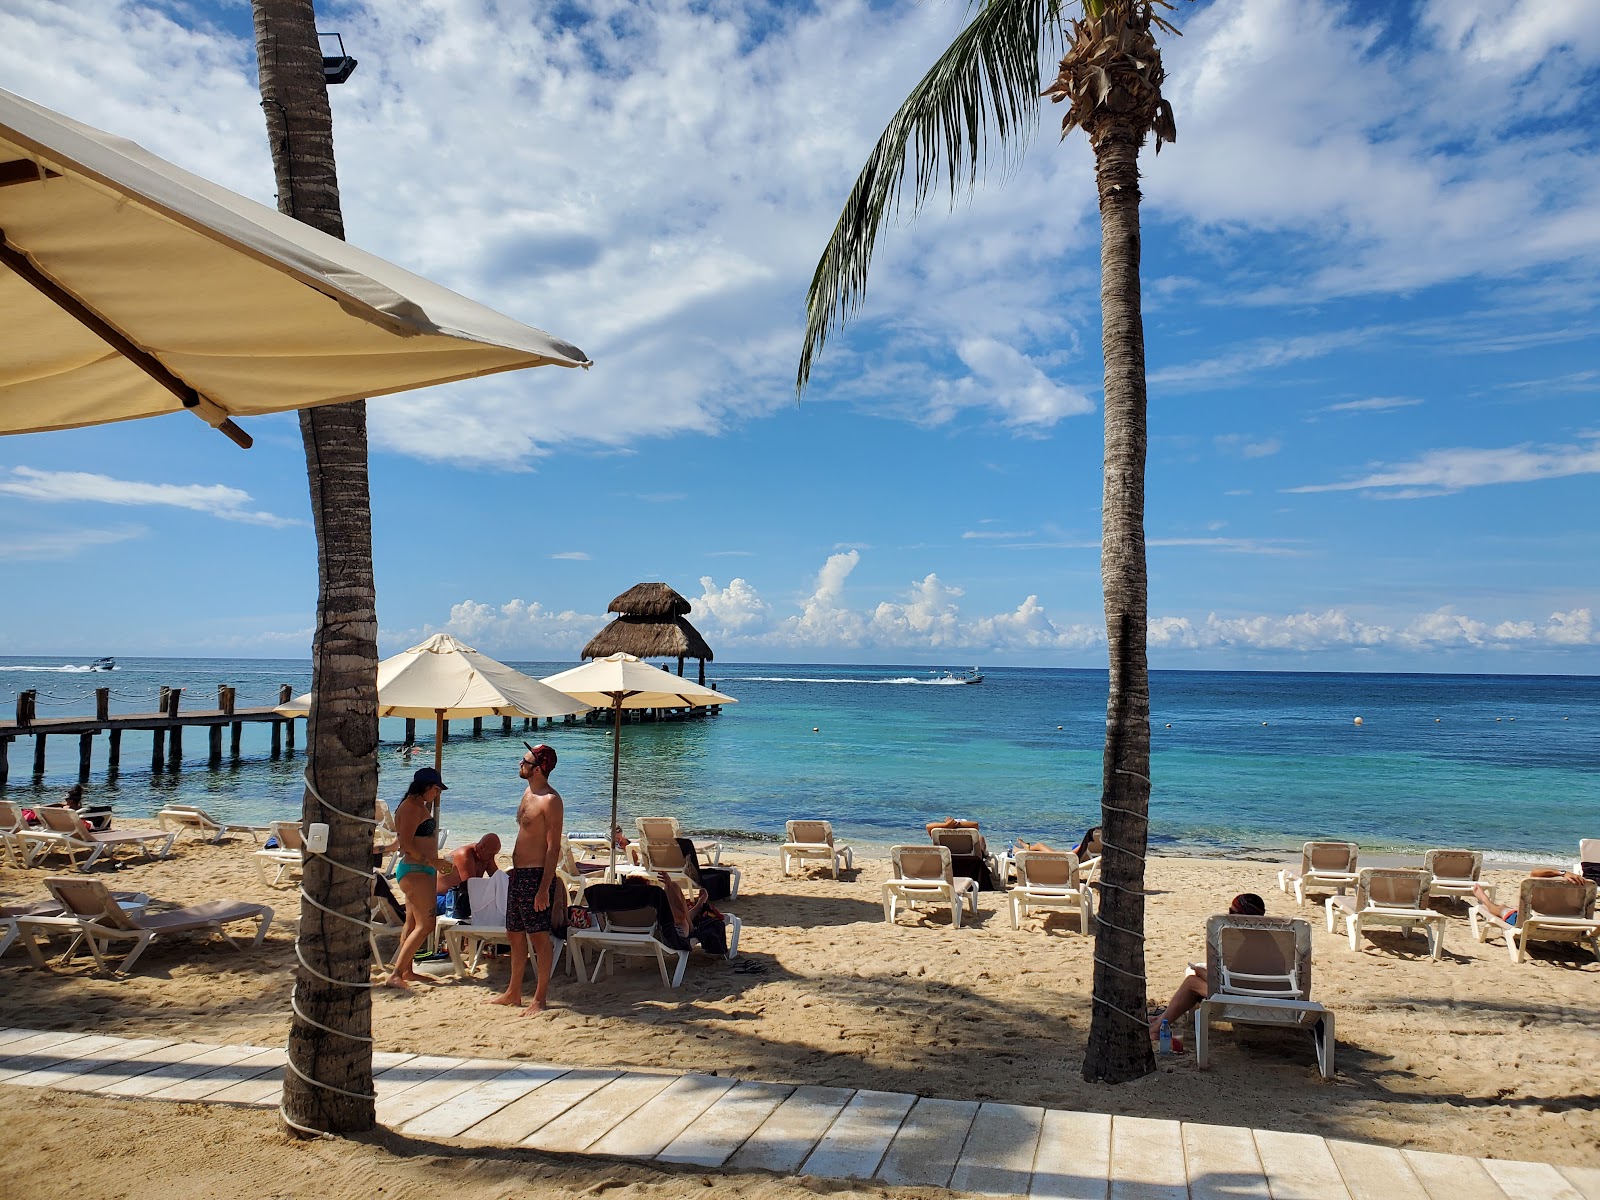 Foto av Cozumel paradise beach med ljus fin sand yta